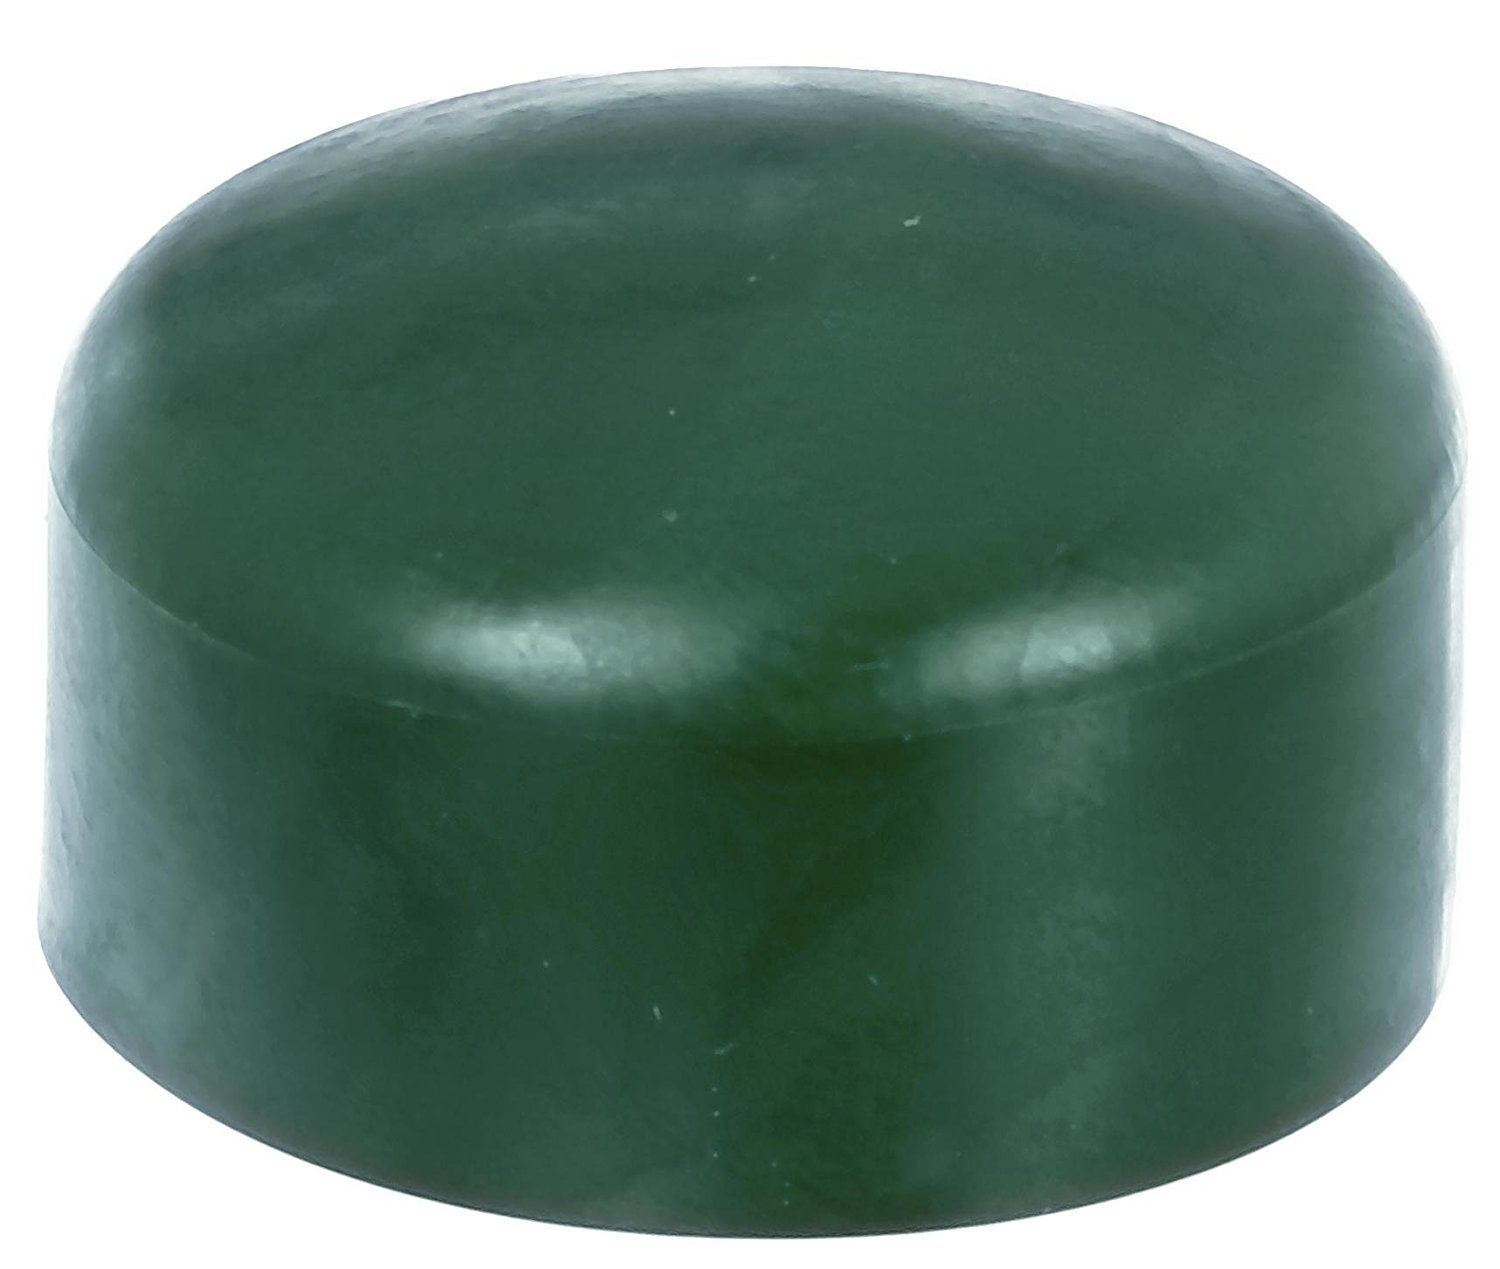 Zaunkappe grün 38-39 mm, Pfostenkappe für runde Metallpfosten, grün, Rohrkappen, Abdeckkappe für Zau